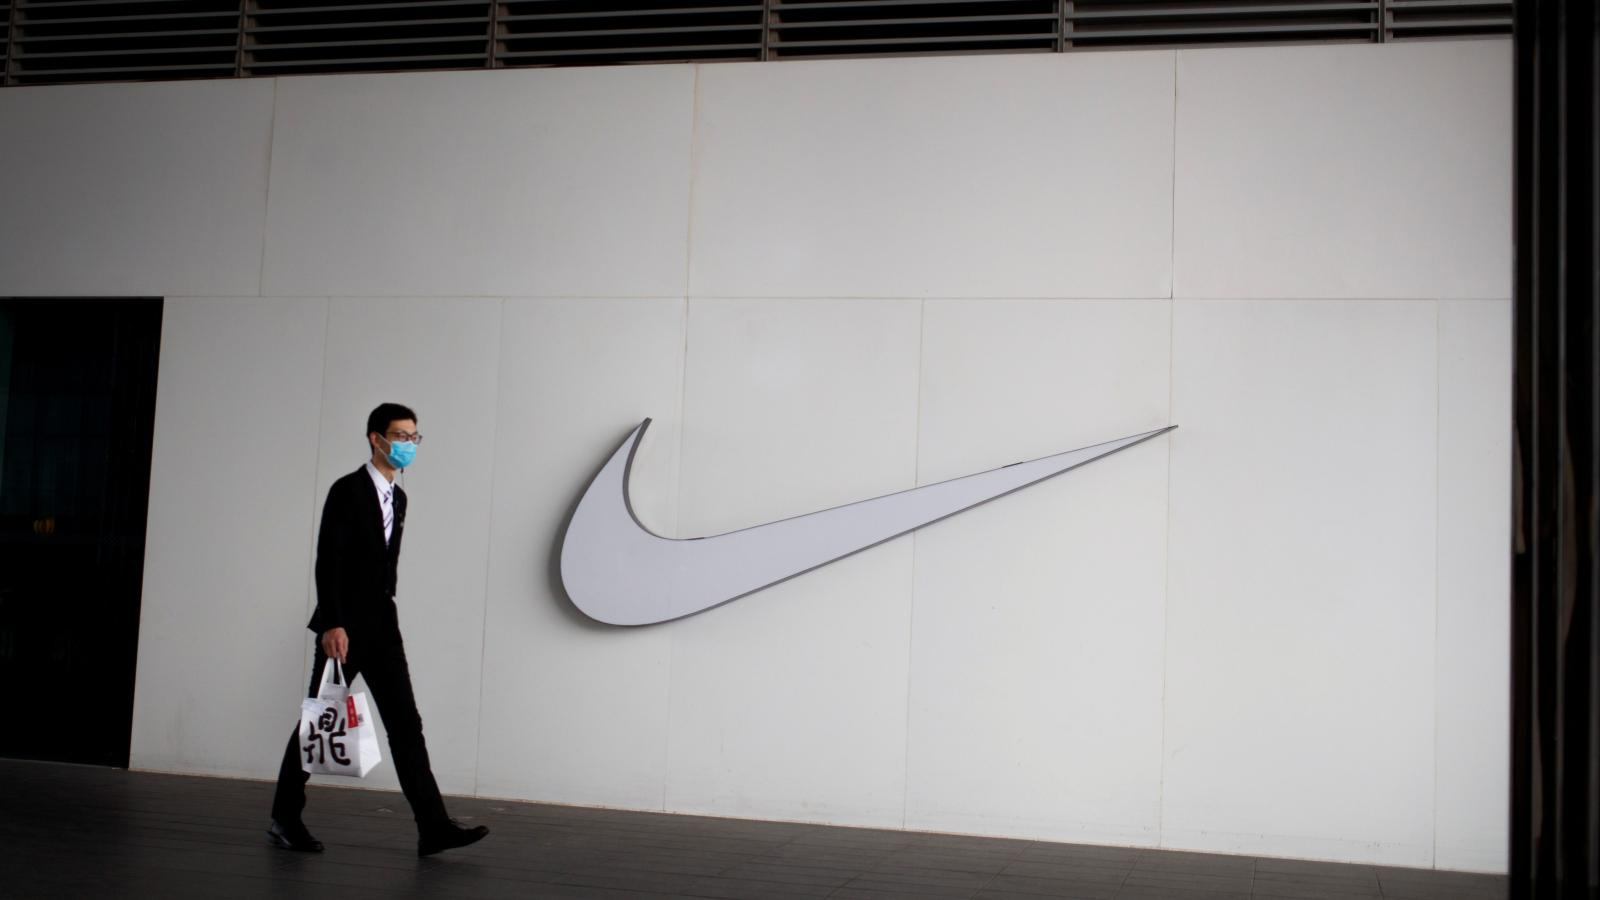 Nike 、adidas 超低折扣，618 是运动品牌恢复元气的节点吗？